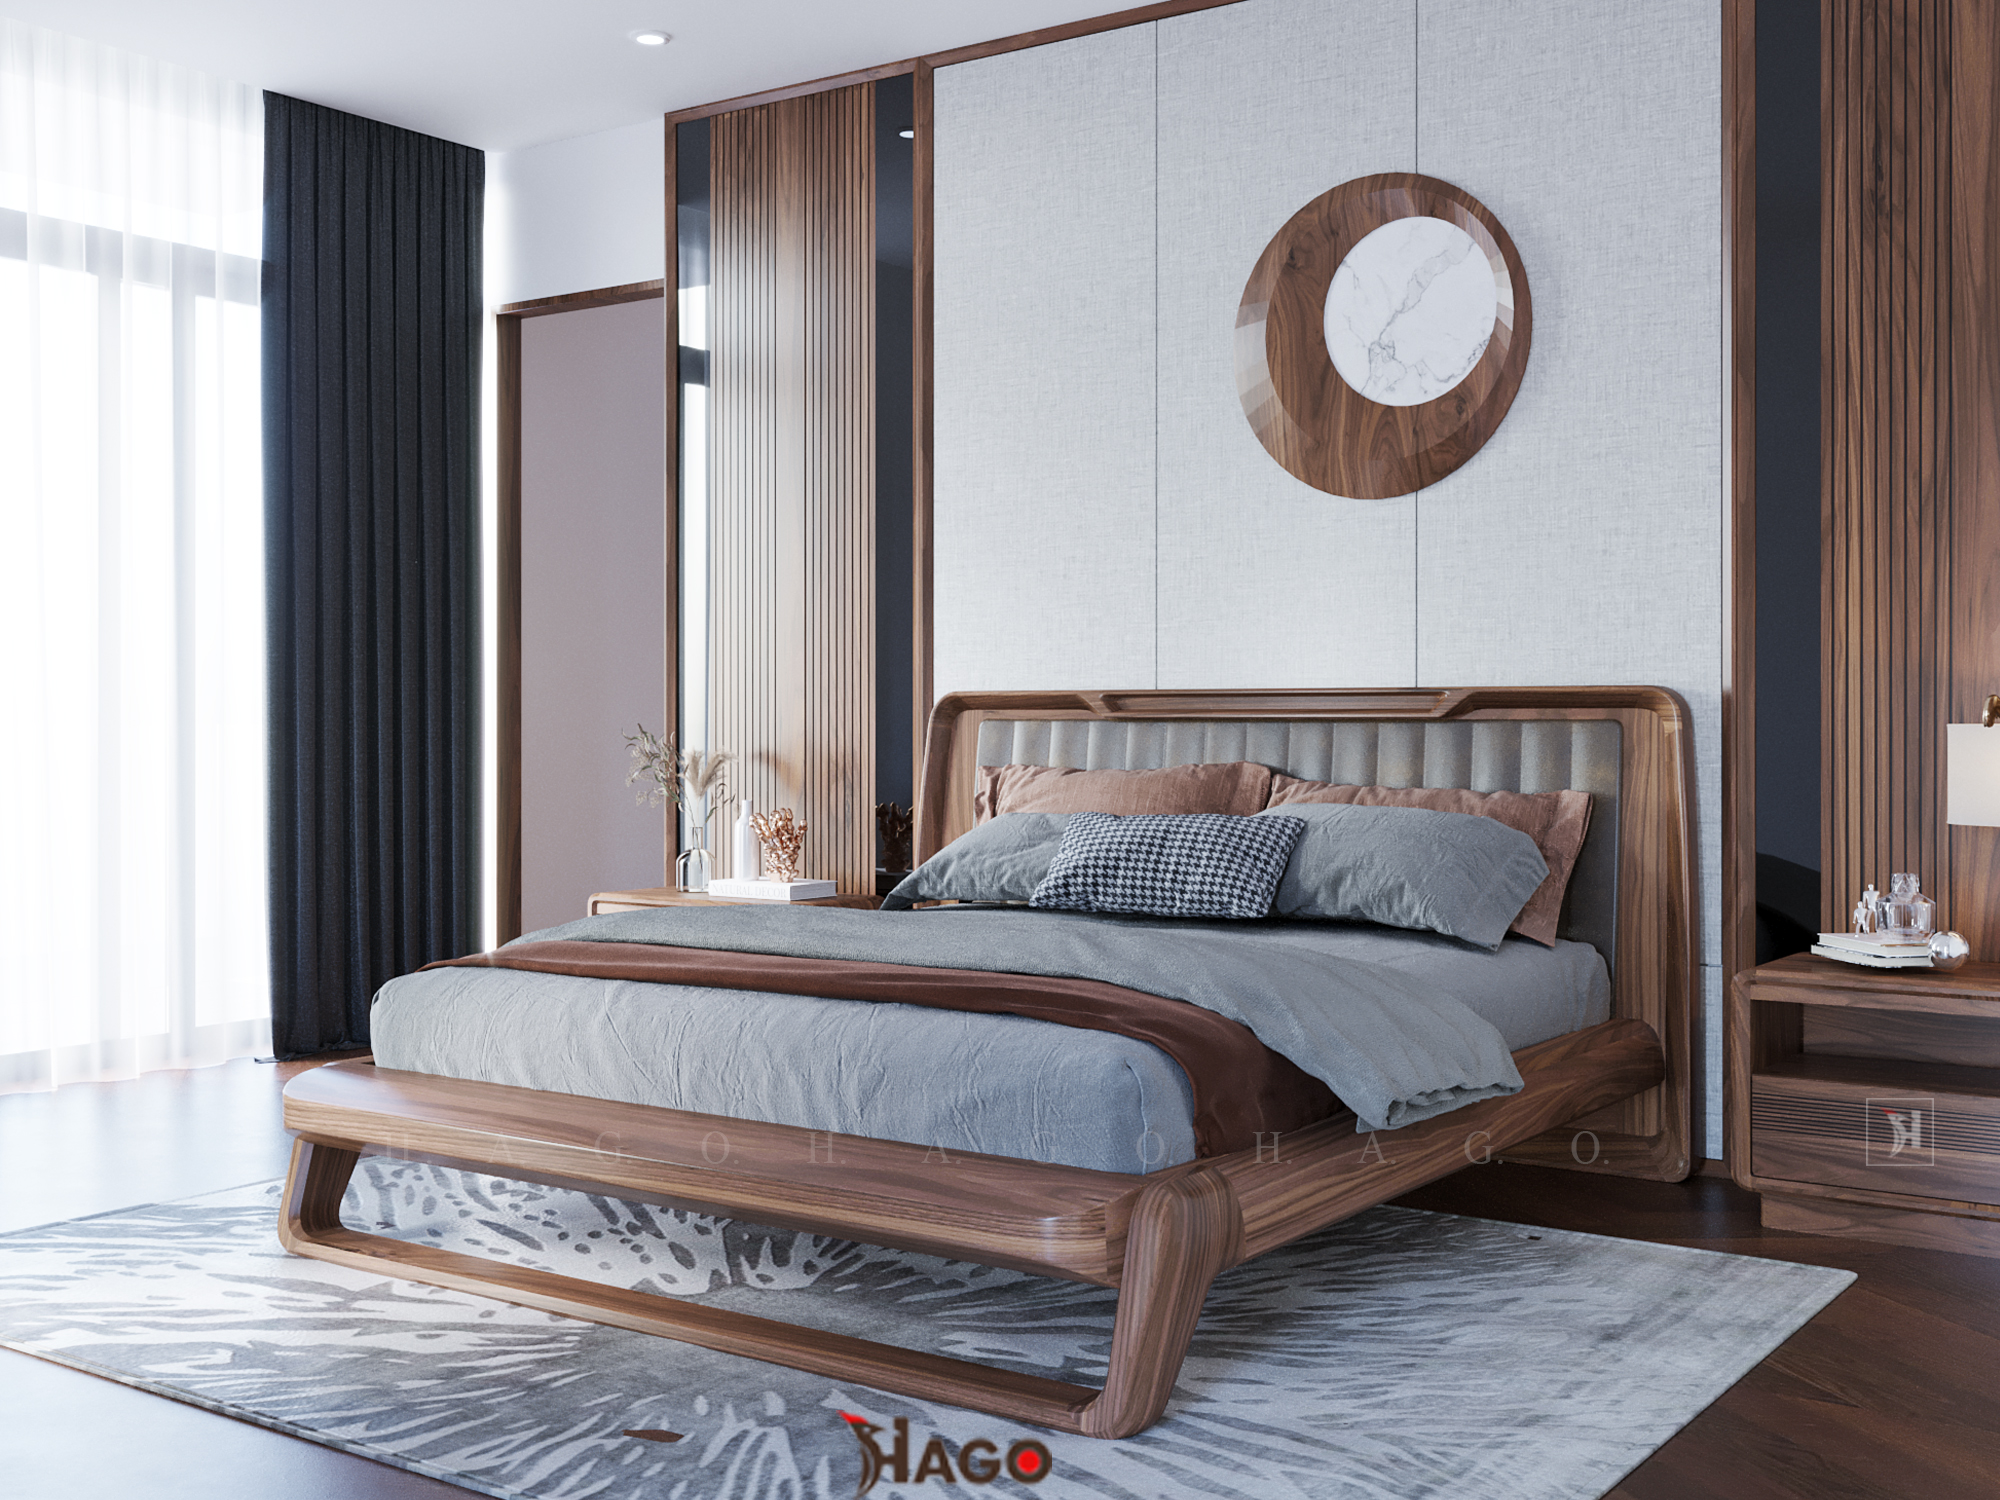 Từ chất liệu gỗ tự nhiên đến các chi tiết rắn chắc và thiết kế thông minh, bạn sẽ không thể bỏ qua những hình ảnh đầy nghệ thuật của giường ngủ gỗ óc chó này.